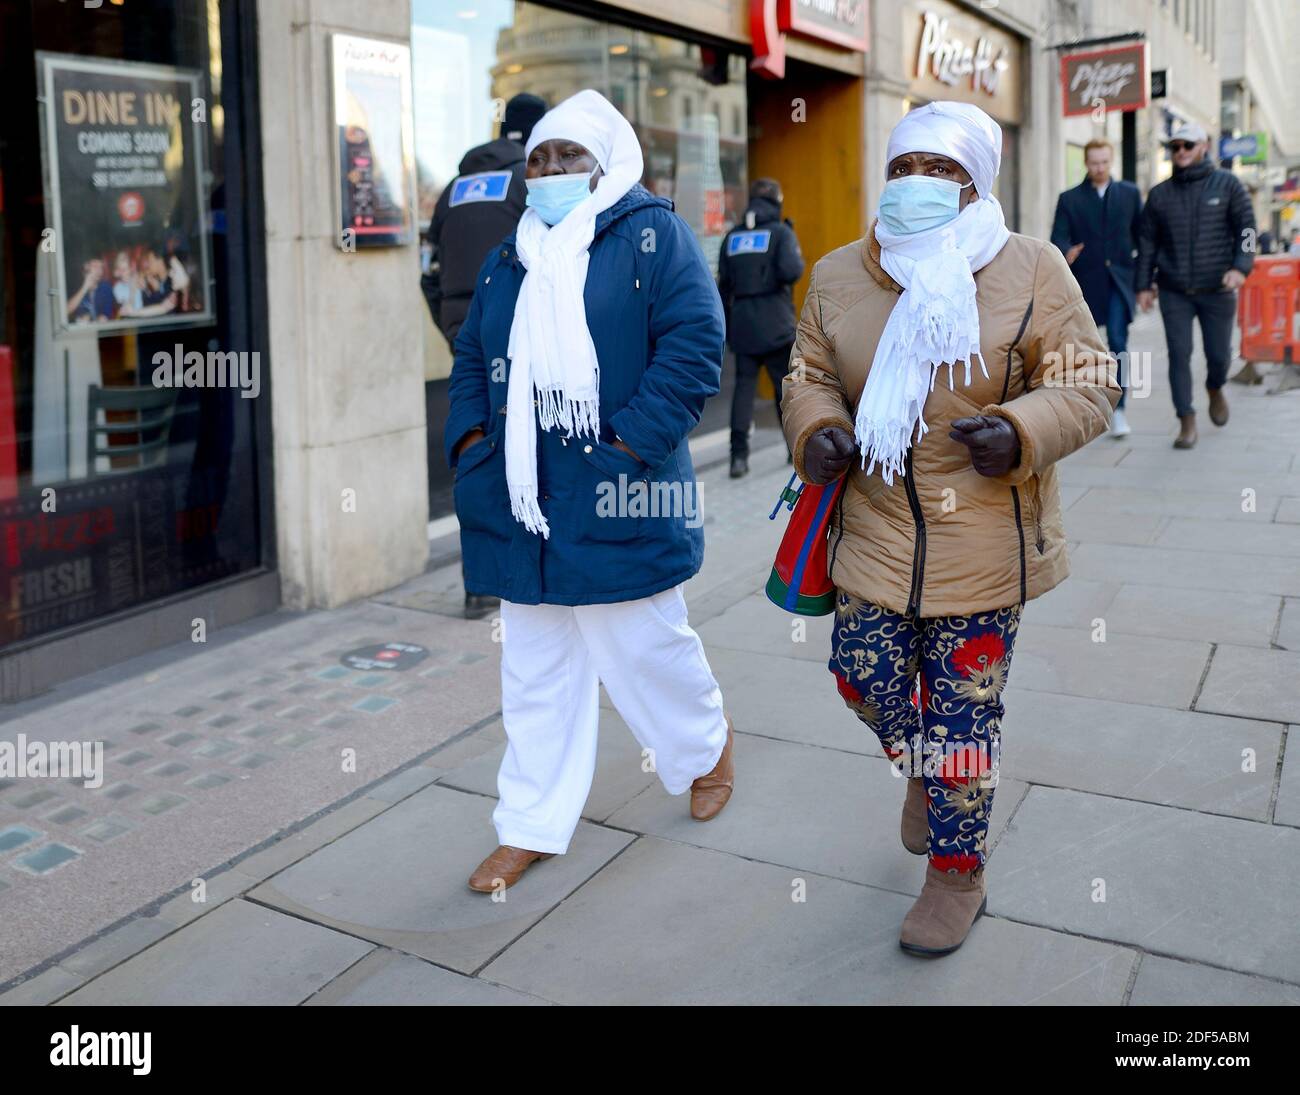 Londra, Inghilterra, Regno Unito. Persone che indossano maschere facciali durante la pandemia COVID, 2020 Foto Stock